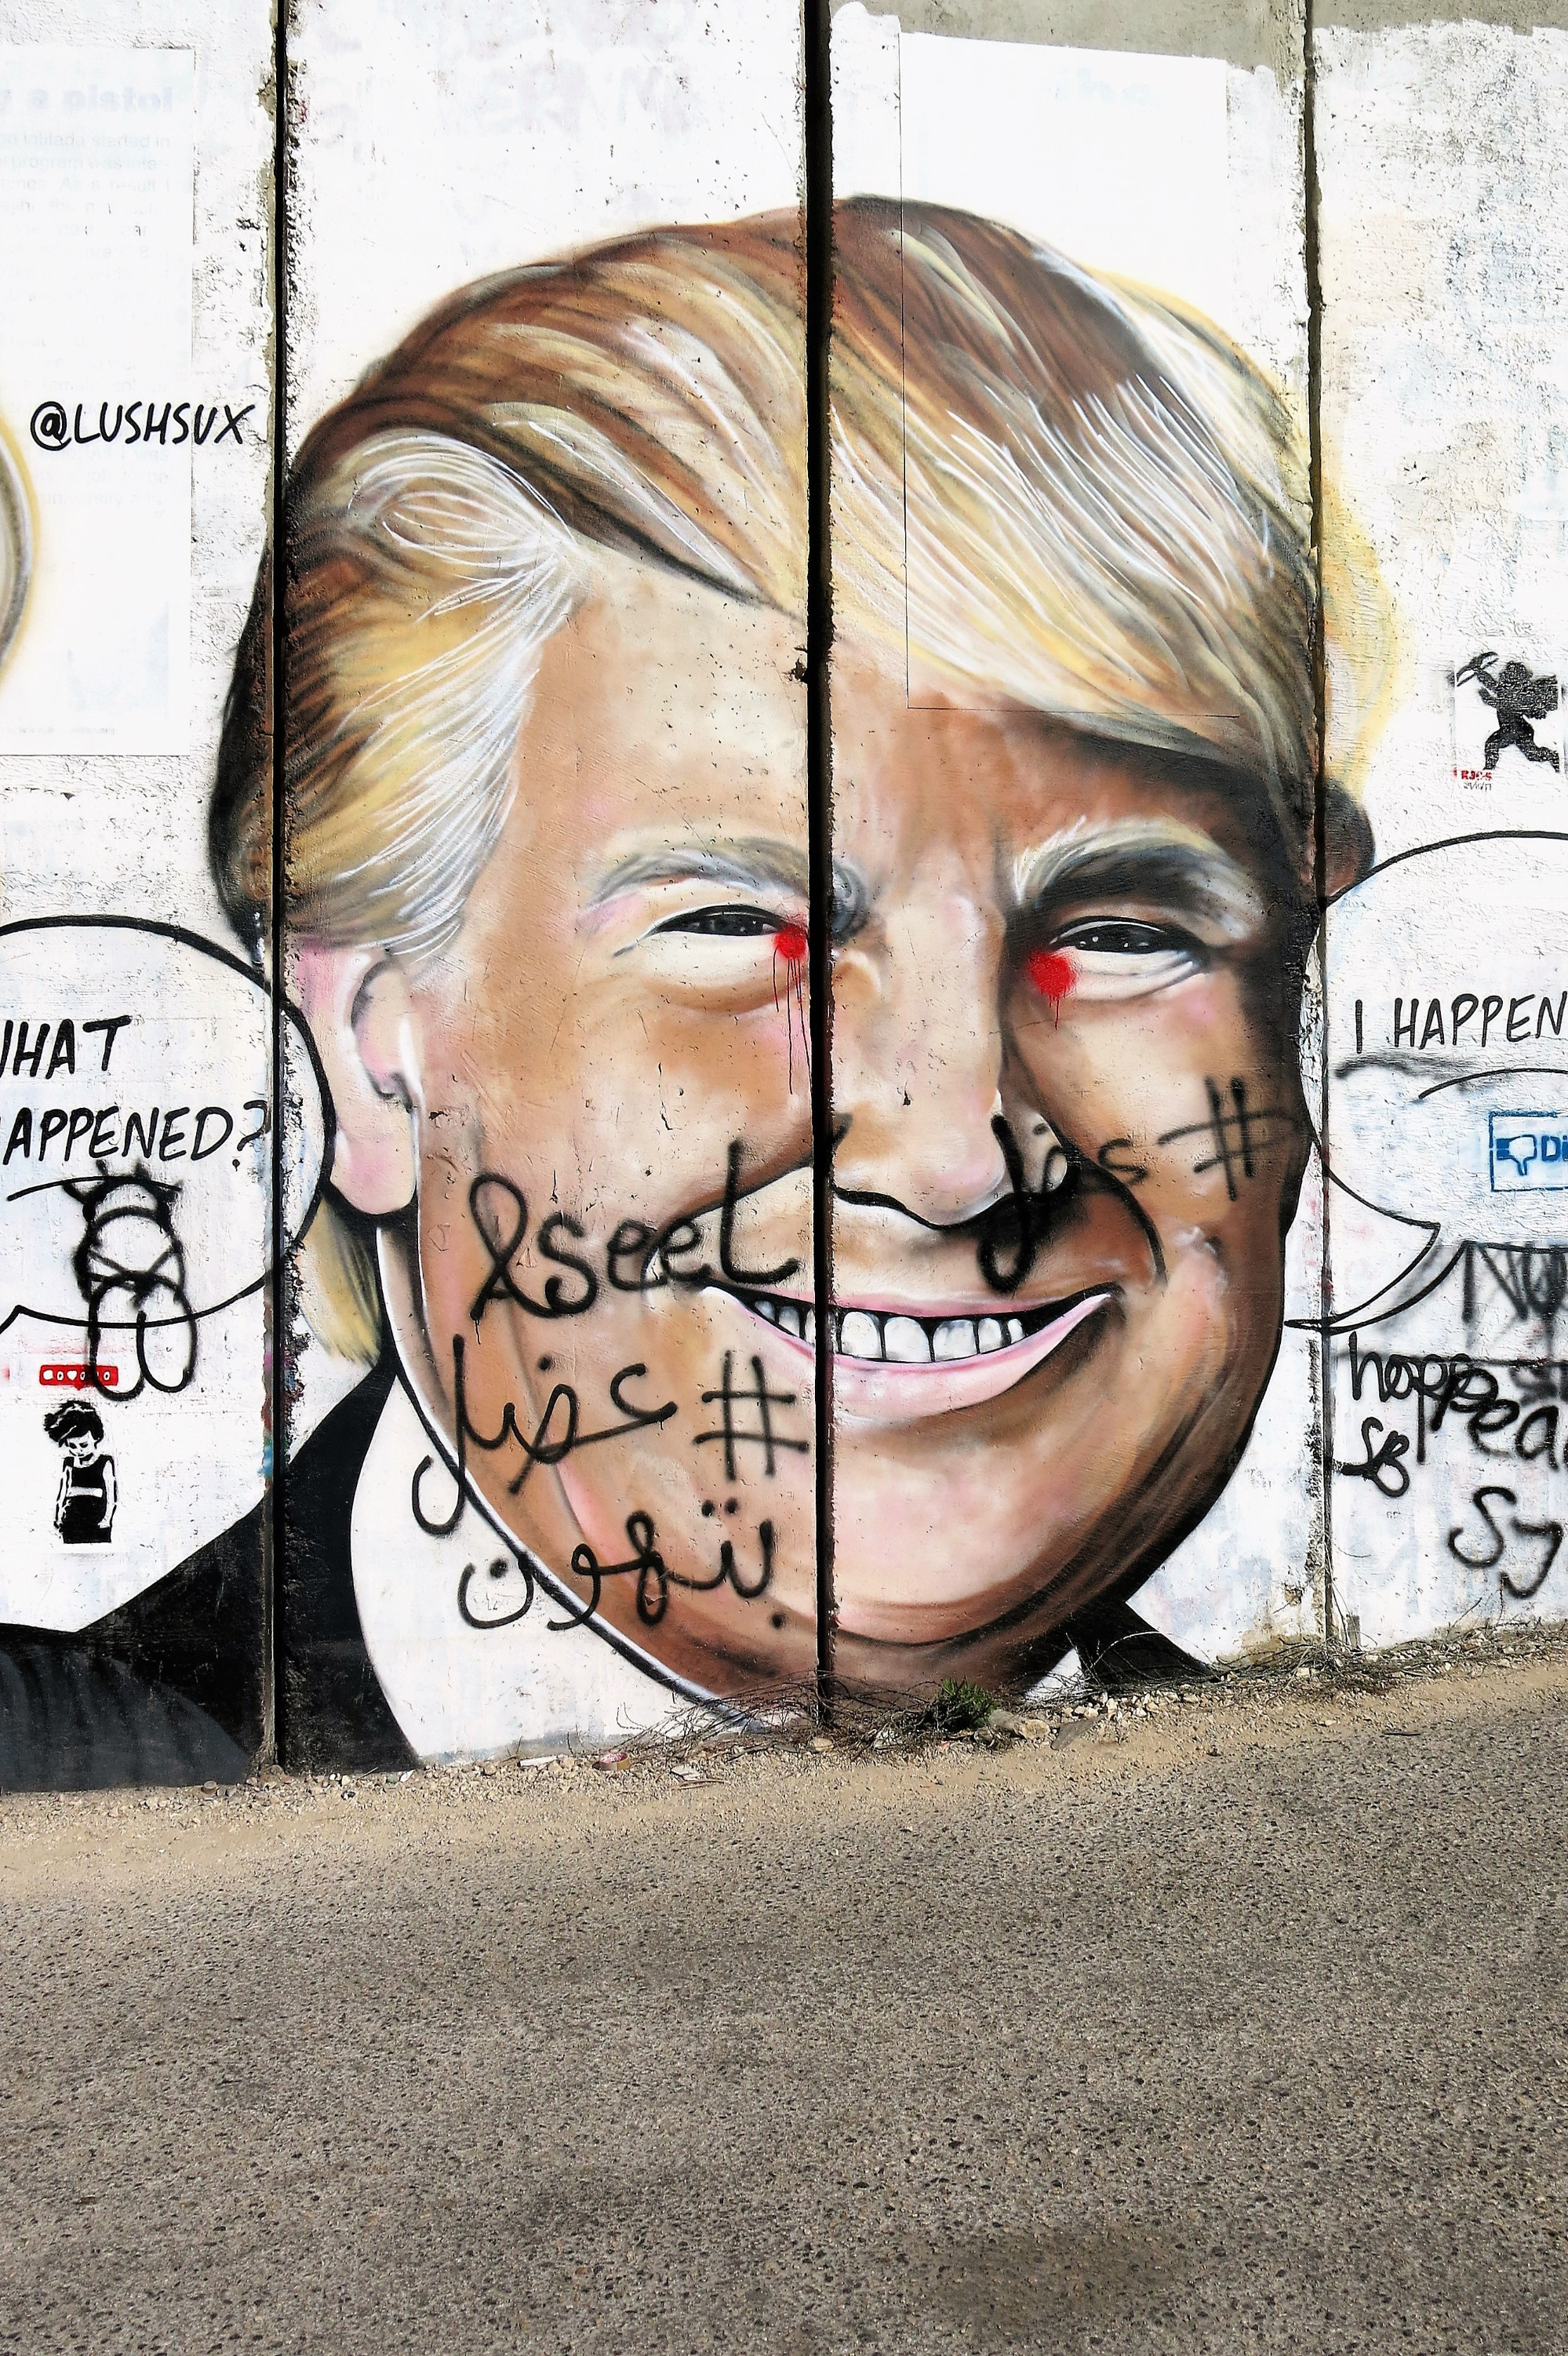 West Bank Seperation Wall Graffiti 